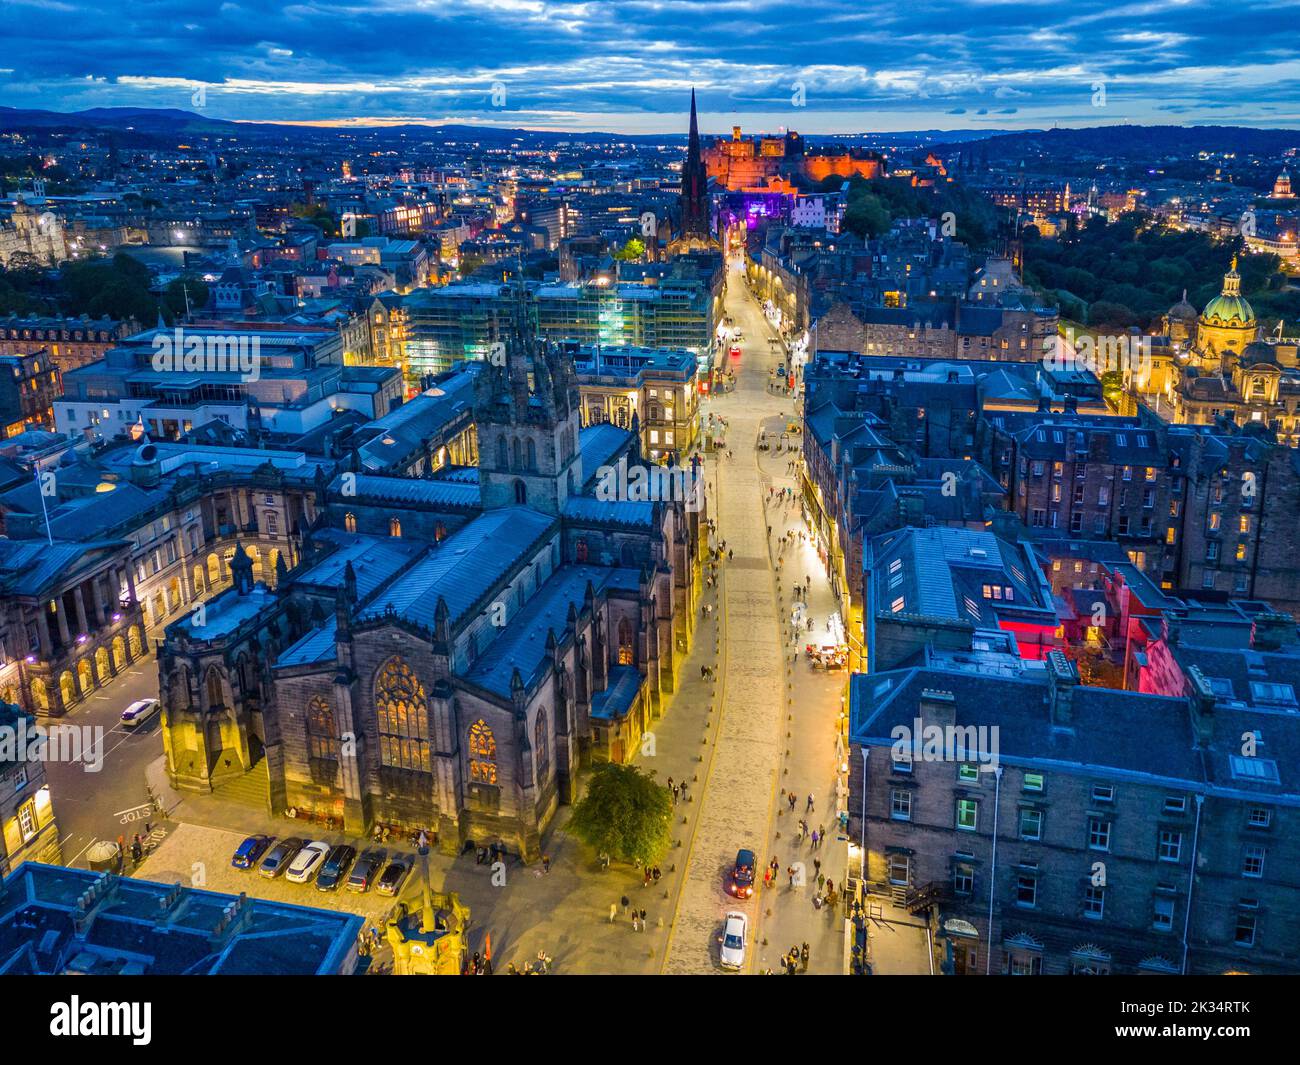 Vue aérienne de Royal Mile et de la cathédrale St Giles la nuit dans la vieille ville d'Édimbourg, en Écosse, au Royaume-Uni Banque D'Images